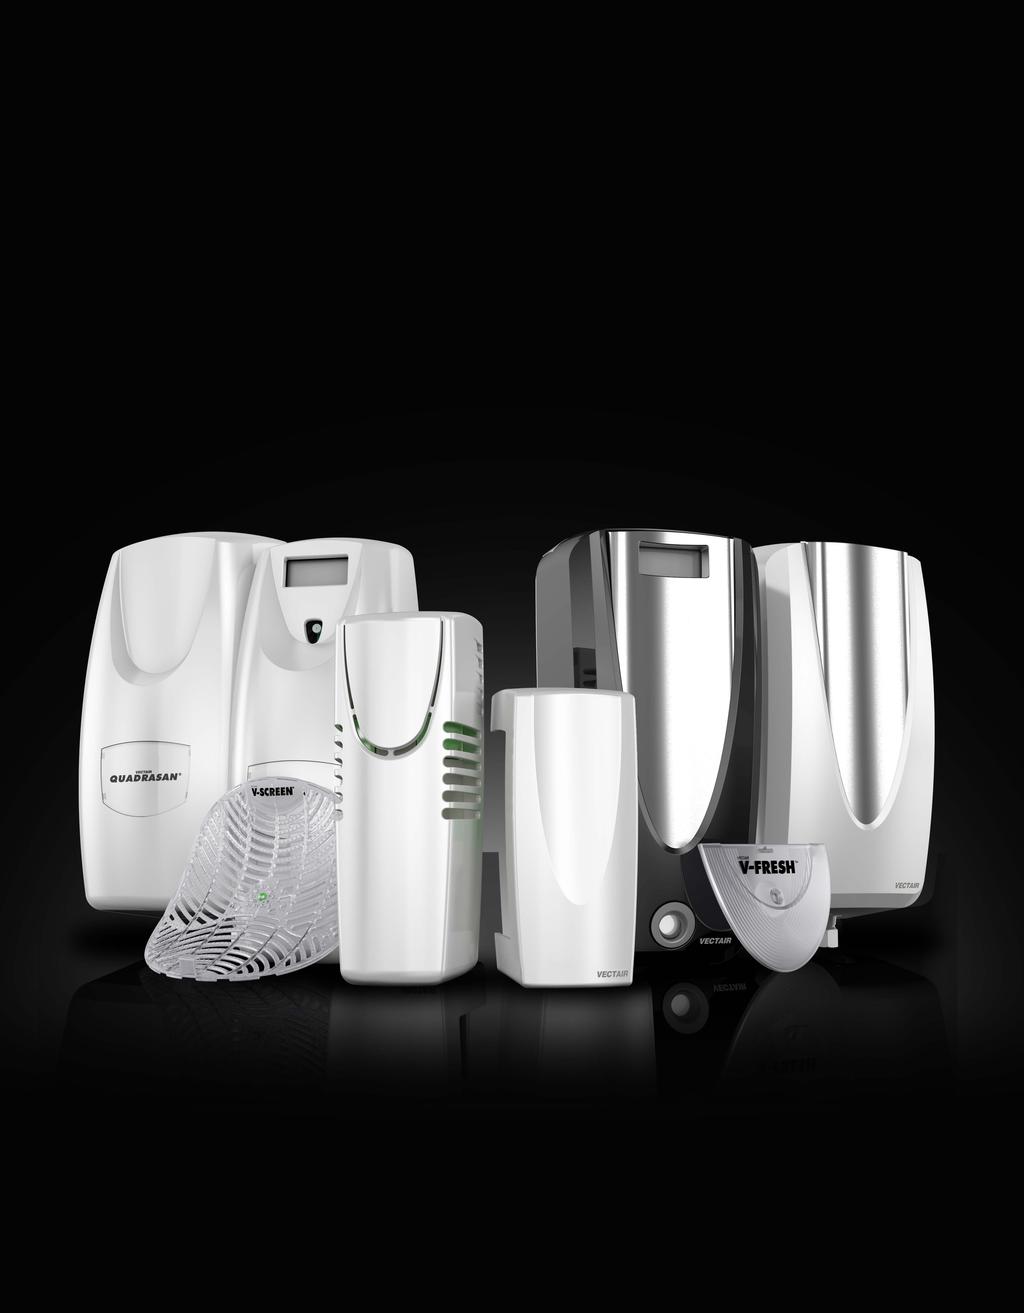 Hygiene Technology That Just Keeps On Evolving. Vectair Family & MVP Range Of Dispensers.